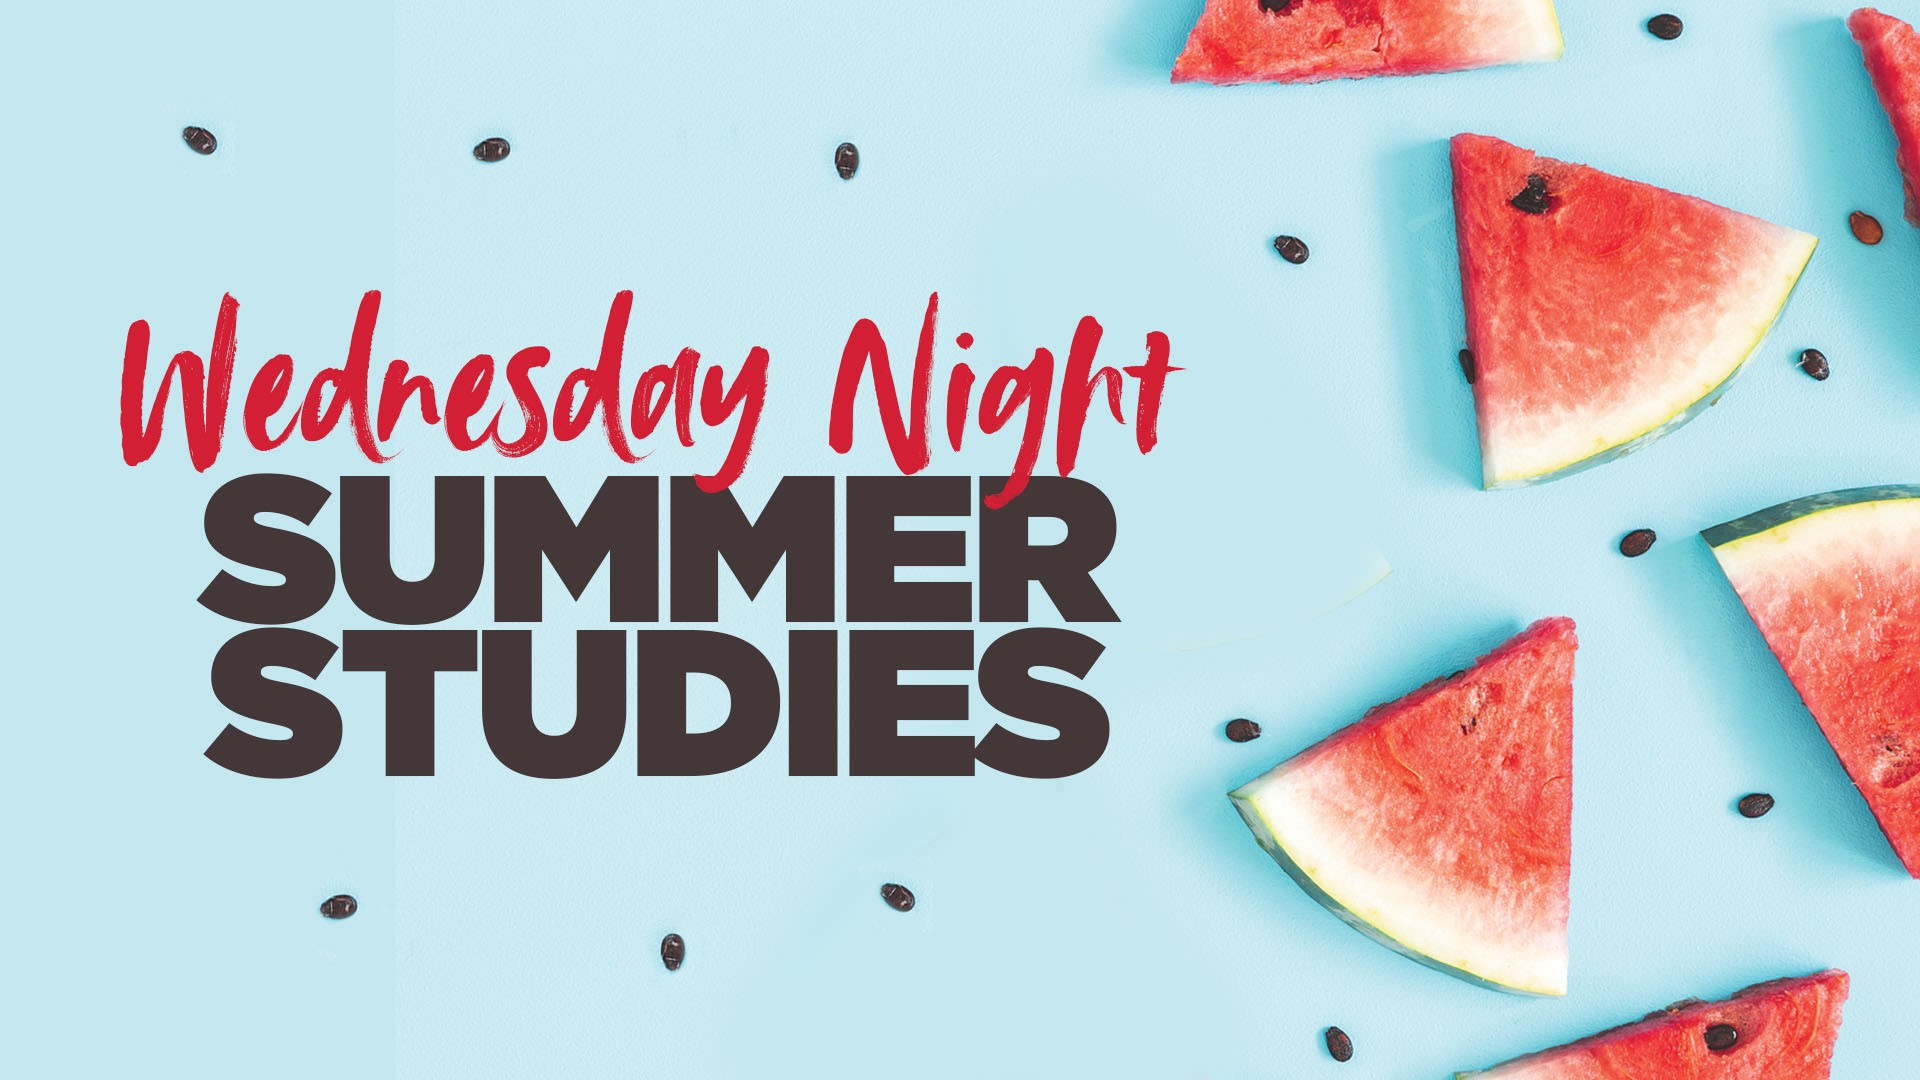 Wednesday Night Summer Studies